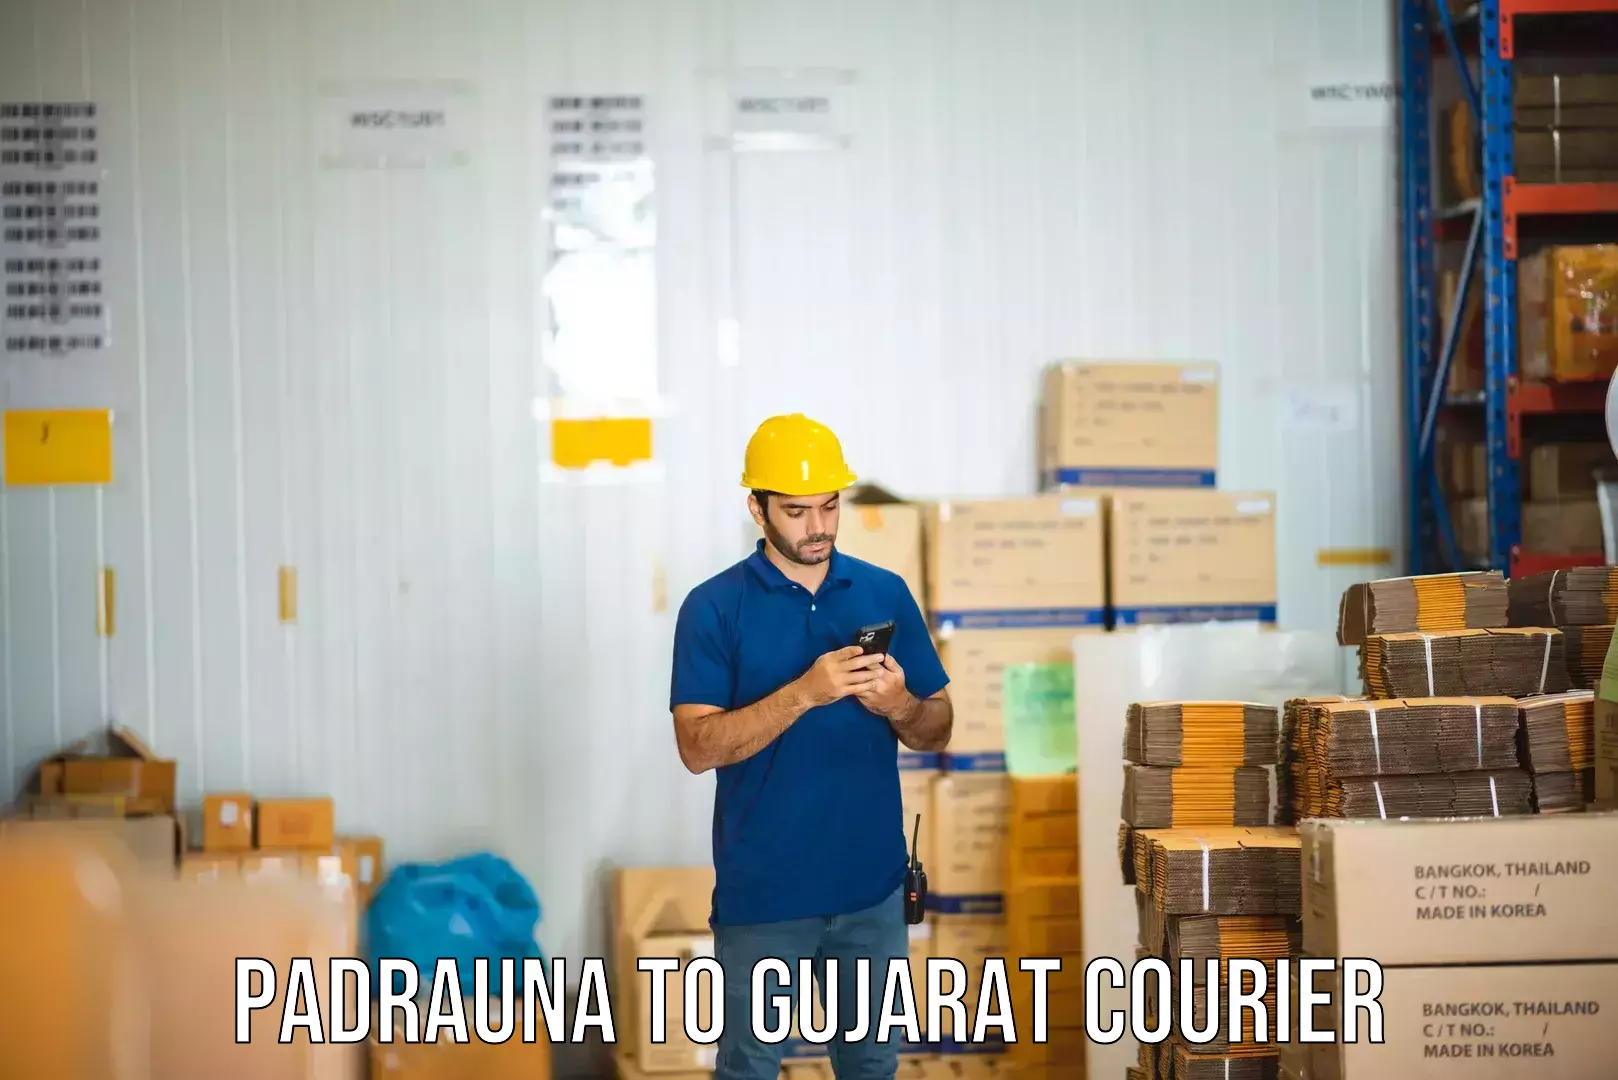 Efficient order fulfillment Padrauna to Gujarat